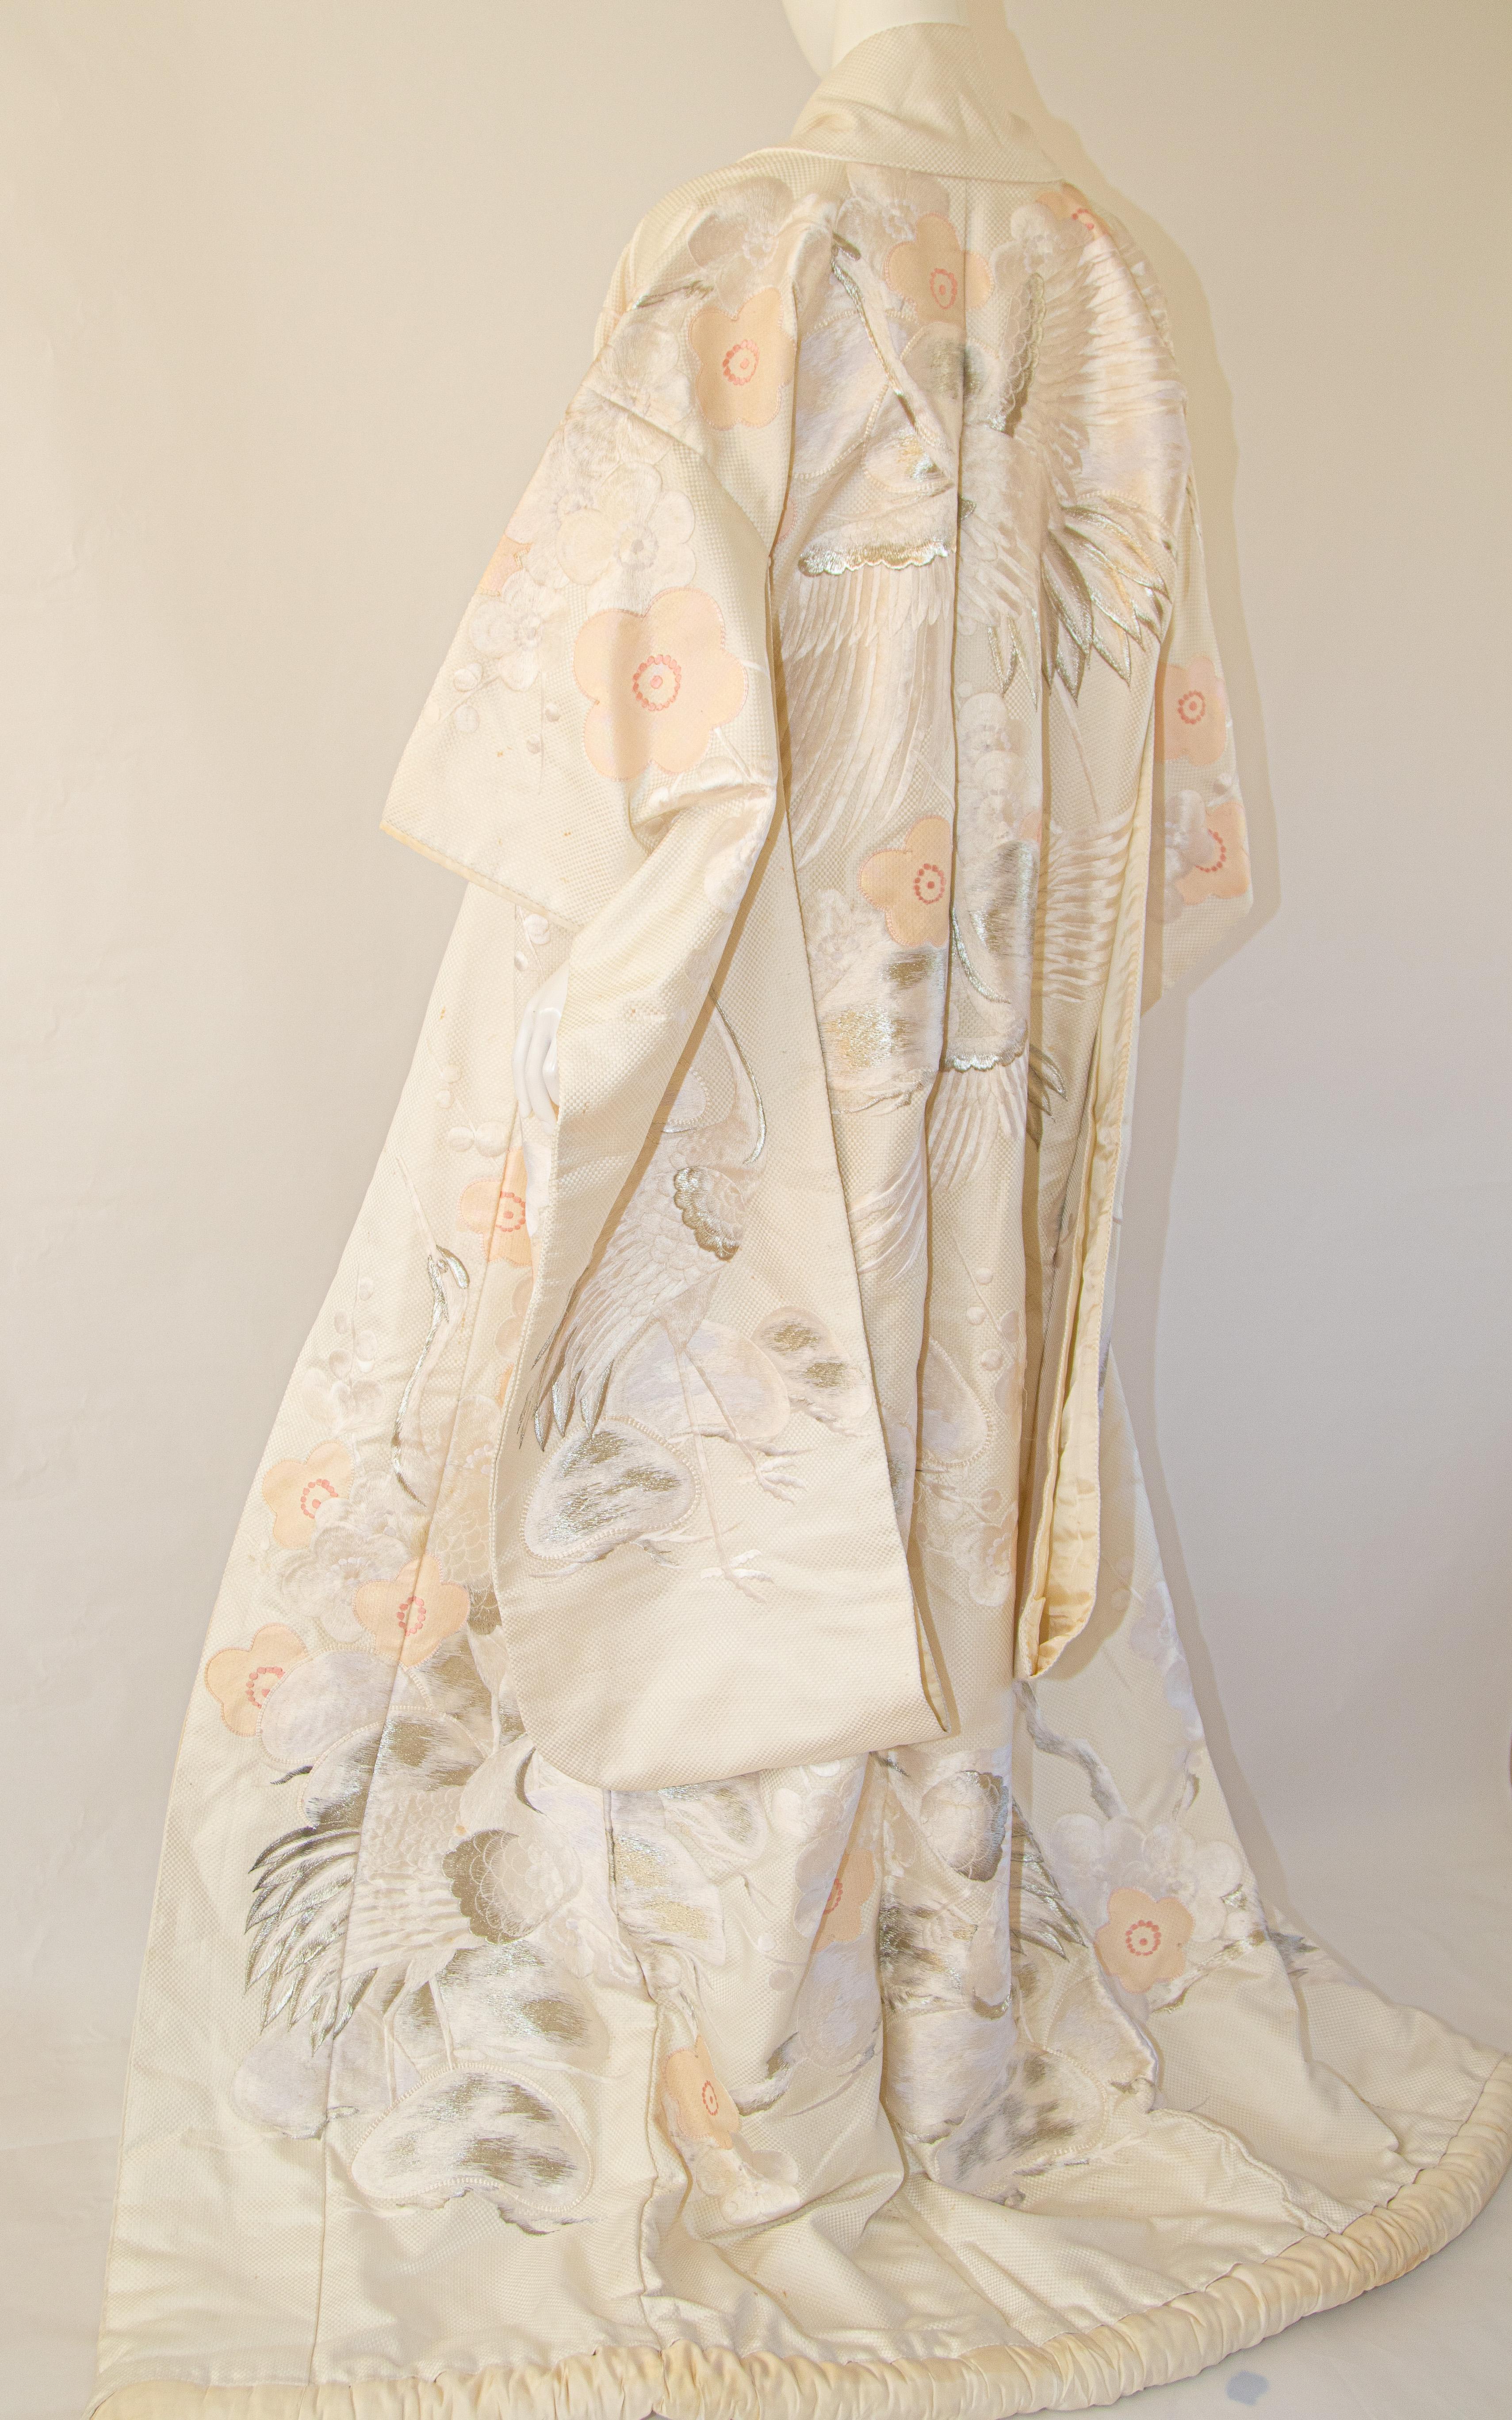 Ein Vintage Mitte des Jahrhunderts Elfenbein weißer Seide Brokat Sammlerstück japanischen zeremoniellen Hochzeit Kimono.
Einzigartiges, handgefertigtes Zeremonienstück in Museumsqualität aus reiner Seide mit aufwändiger, detaillierter Handstickerei,